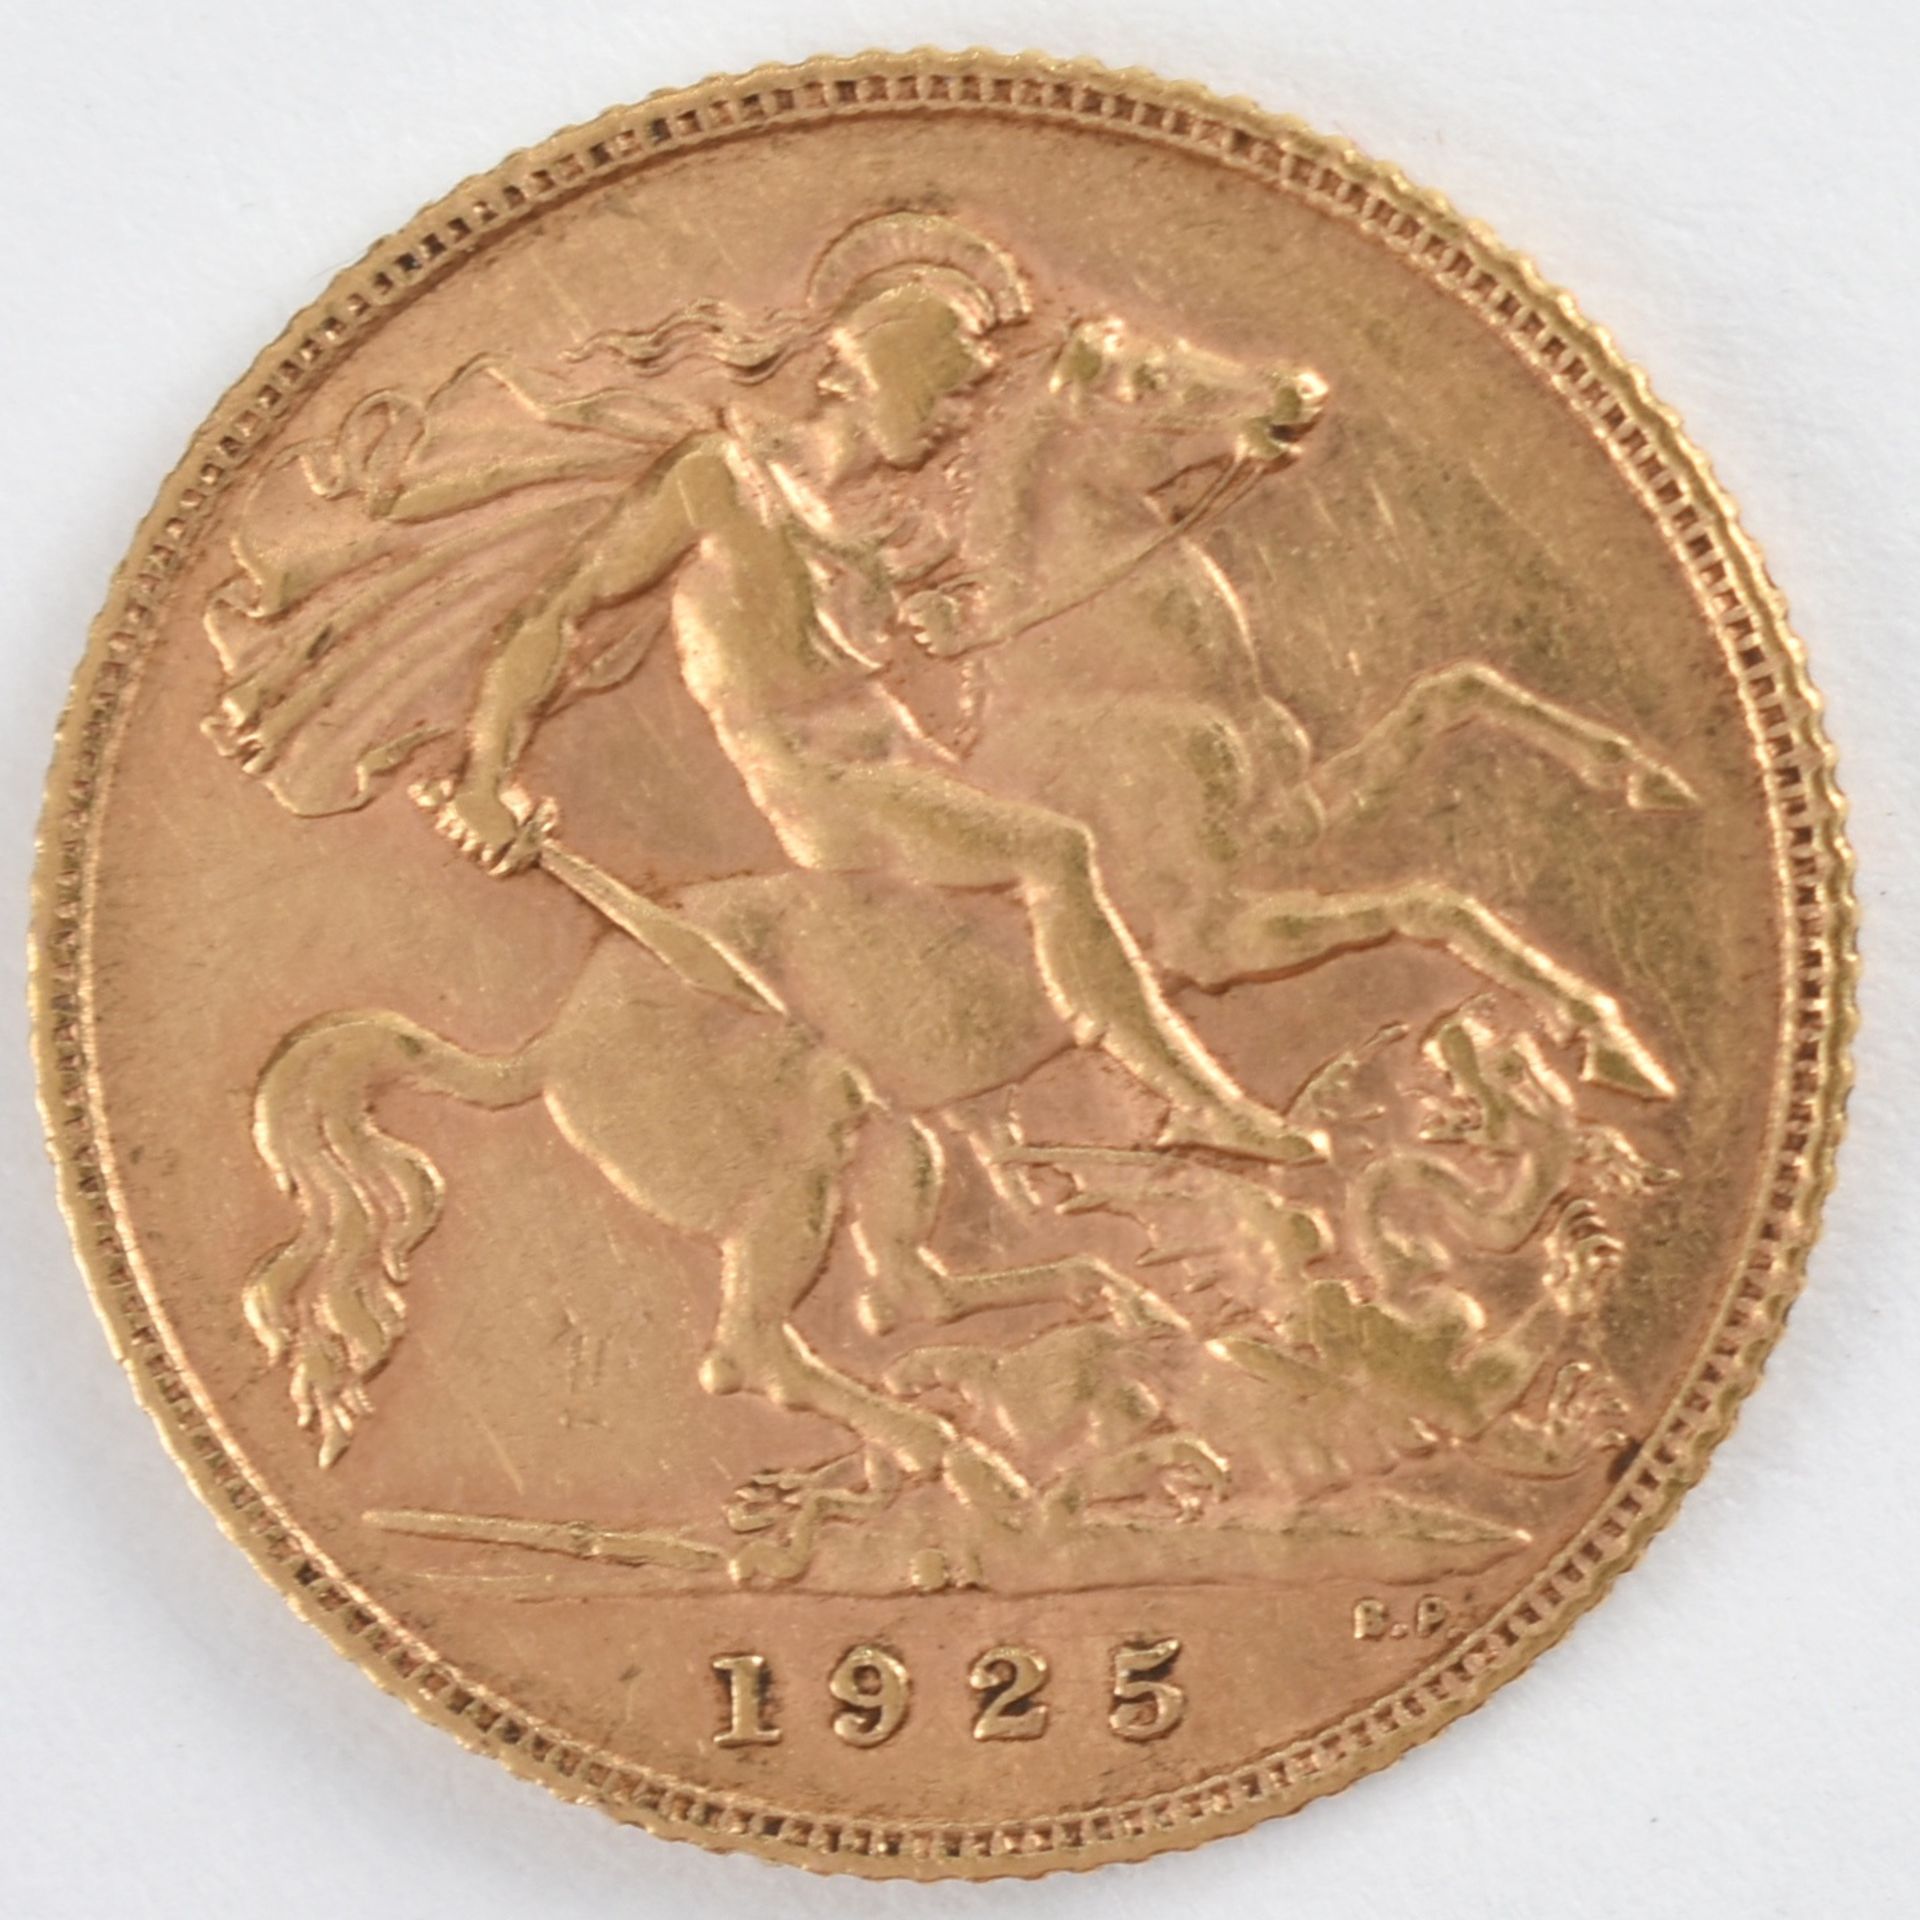 Goldmünze Großbritannien 1925 1/2 Sovereign - 1/2 Pfund in Gold, 3,994 g, 916/1000, D ca. 19,3 mm, - Bild 3 aus 3